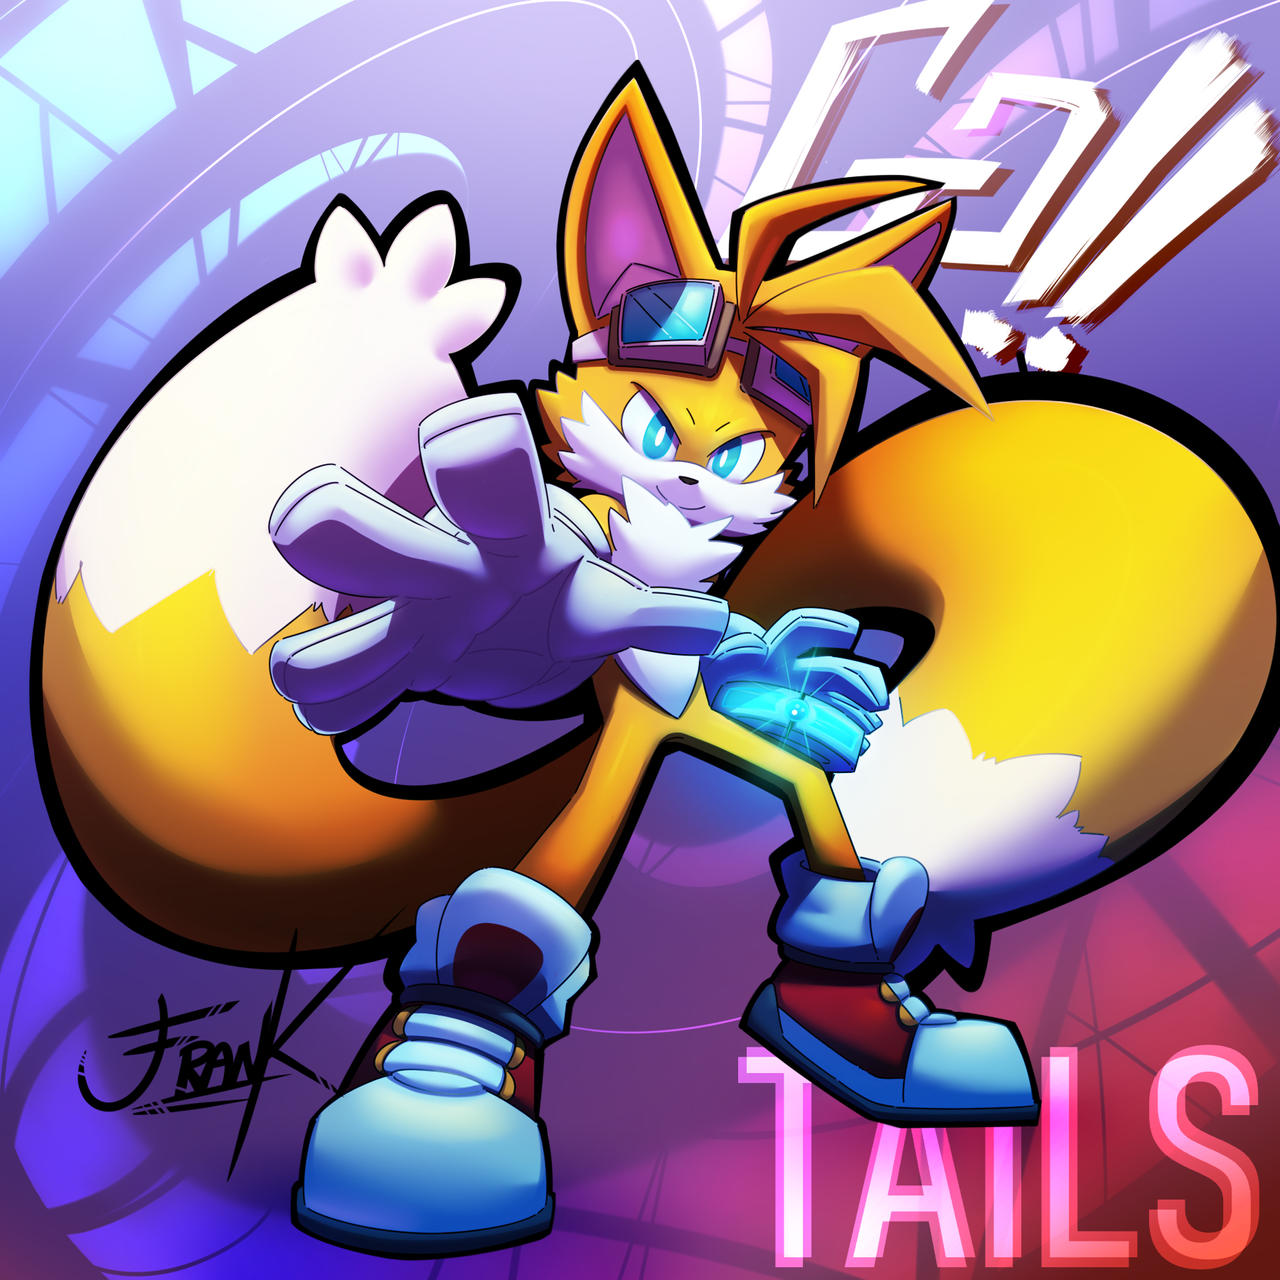 Super Tails Concept by JSevion on DeviantArt